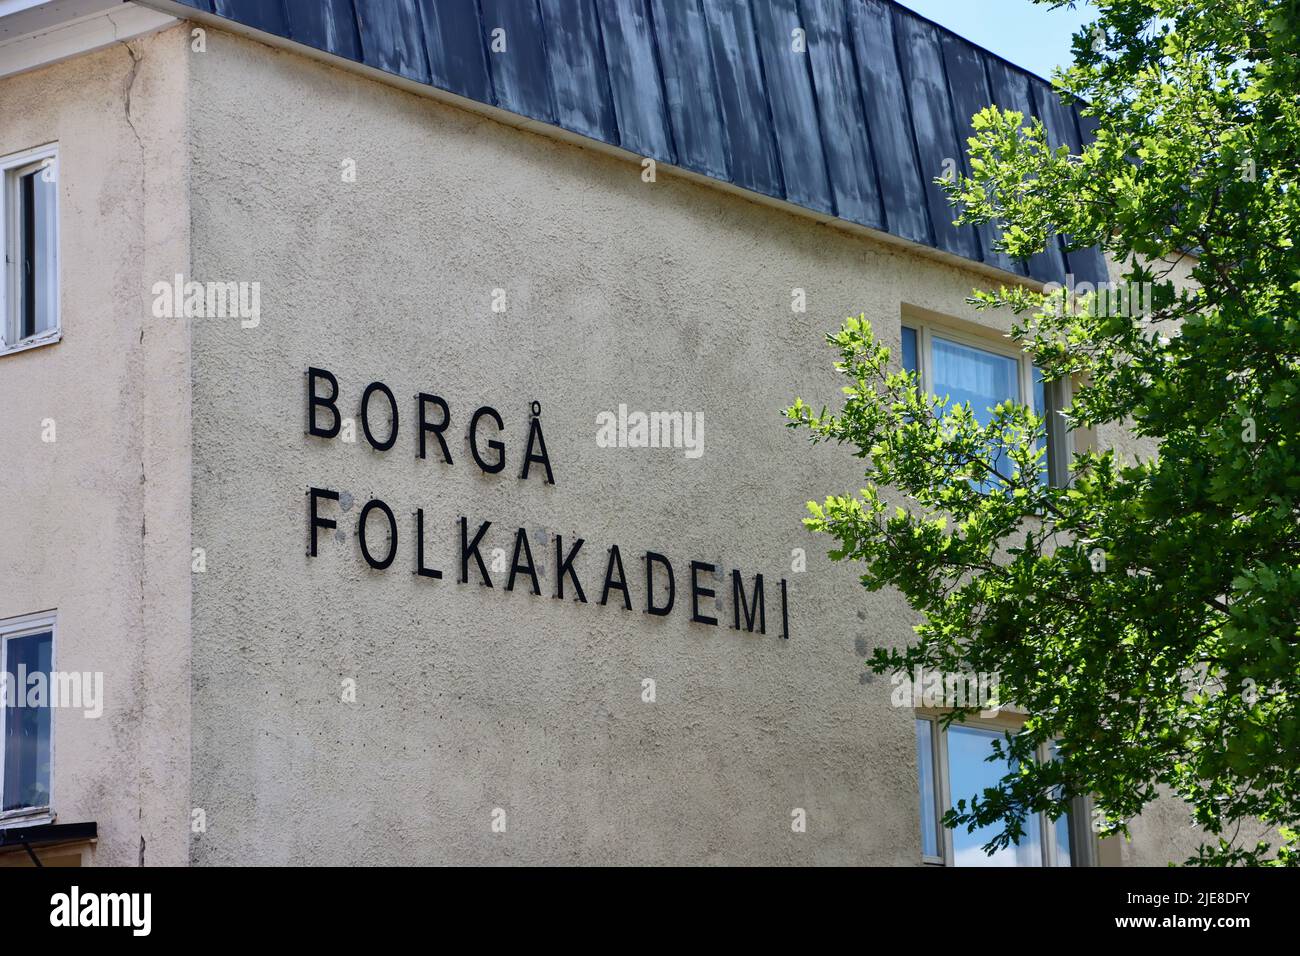 Borgå Folkakademi in Porvoo, Finland Stock Photo